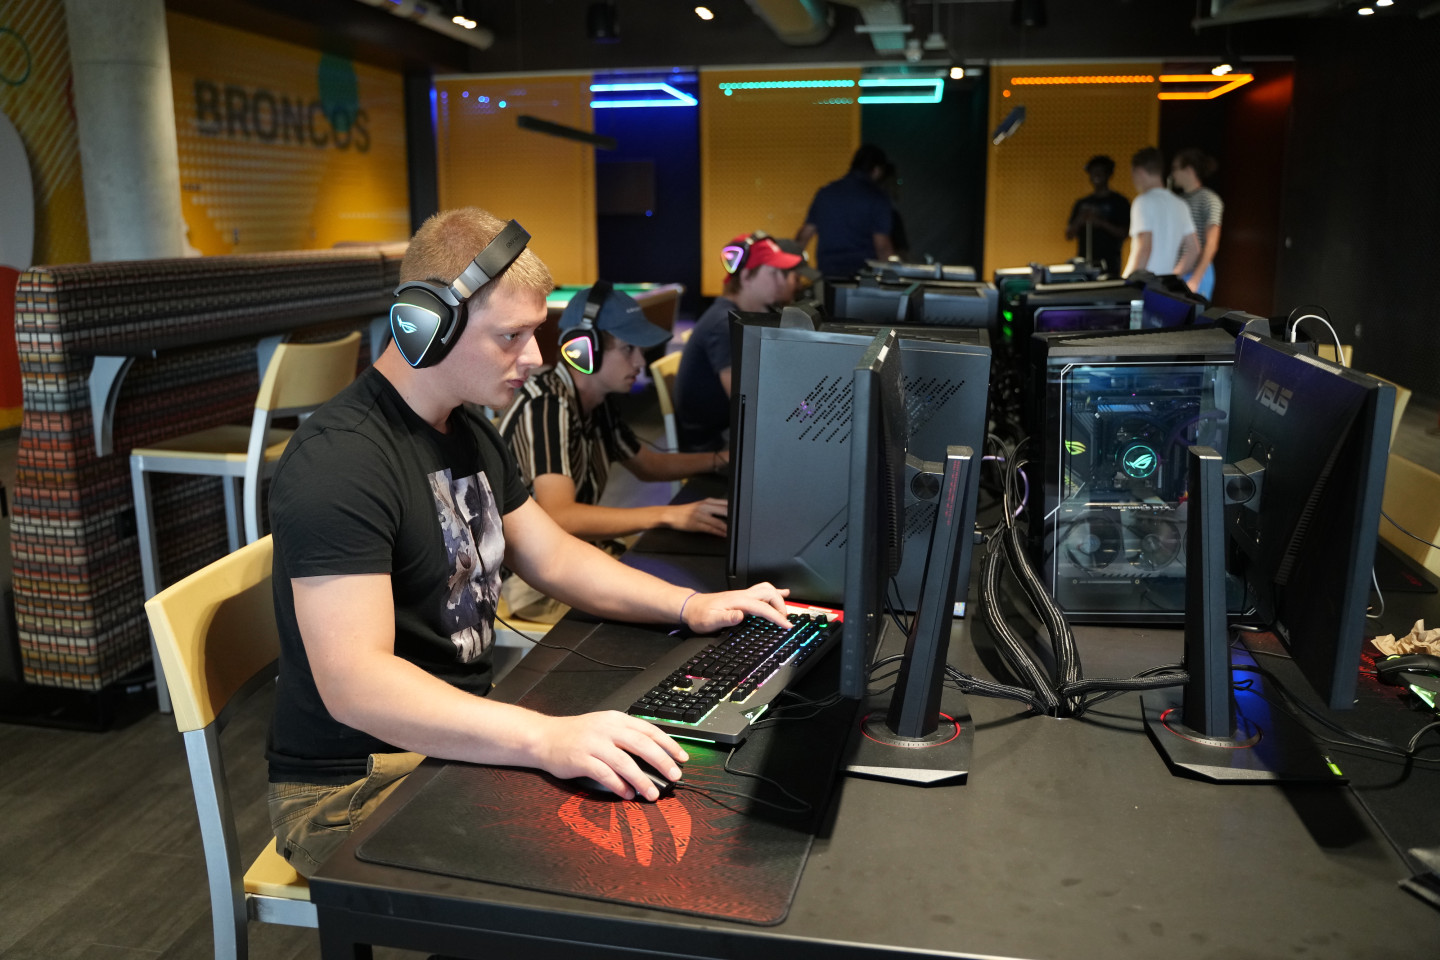 A student sits at a gaming computer.